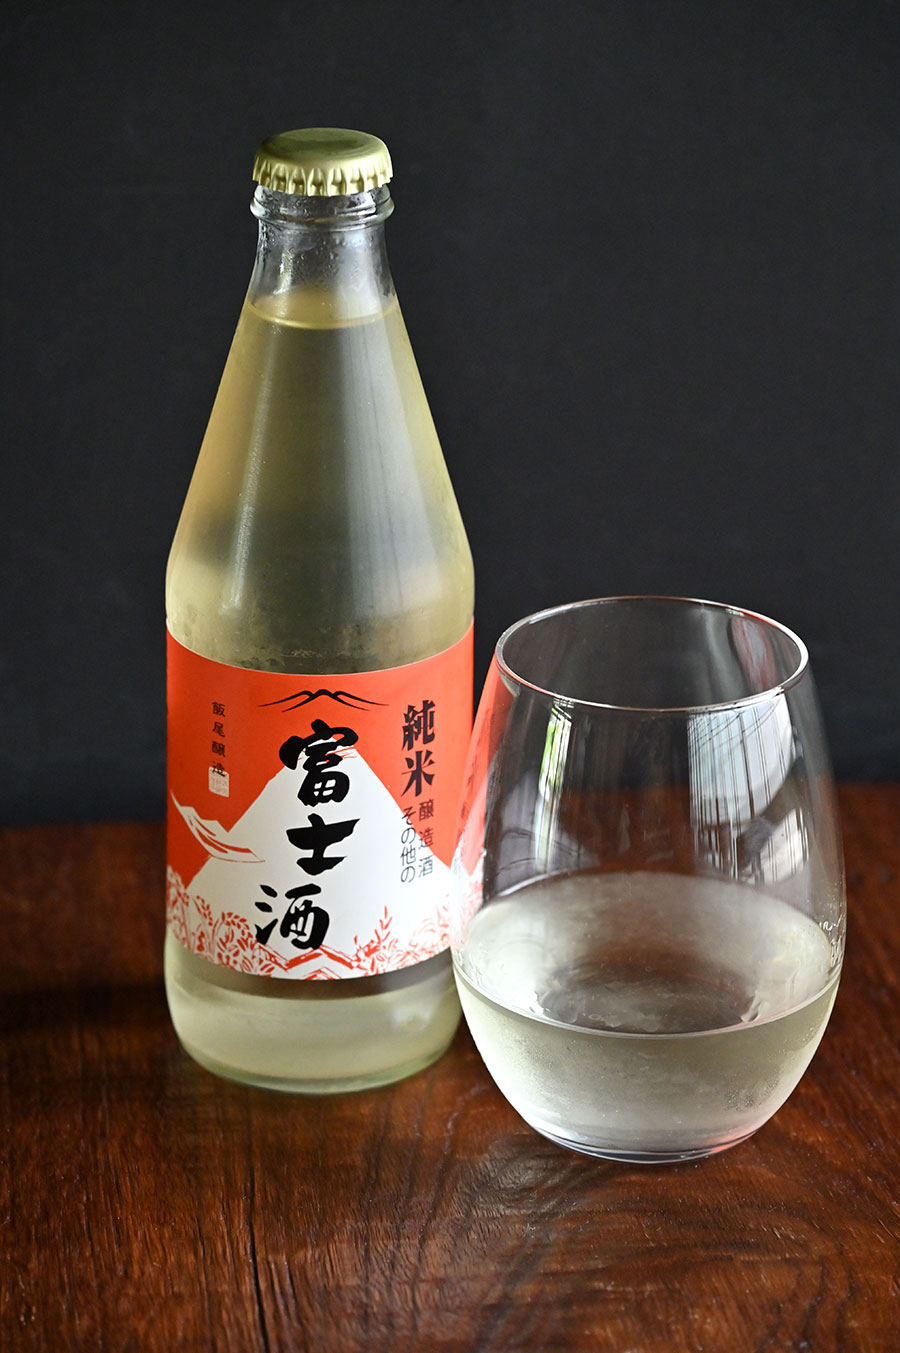 非売品の「純米富士酒」も味わえる。グラス1,100円。